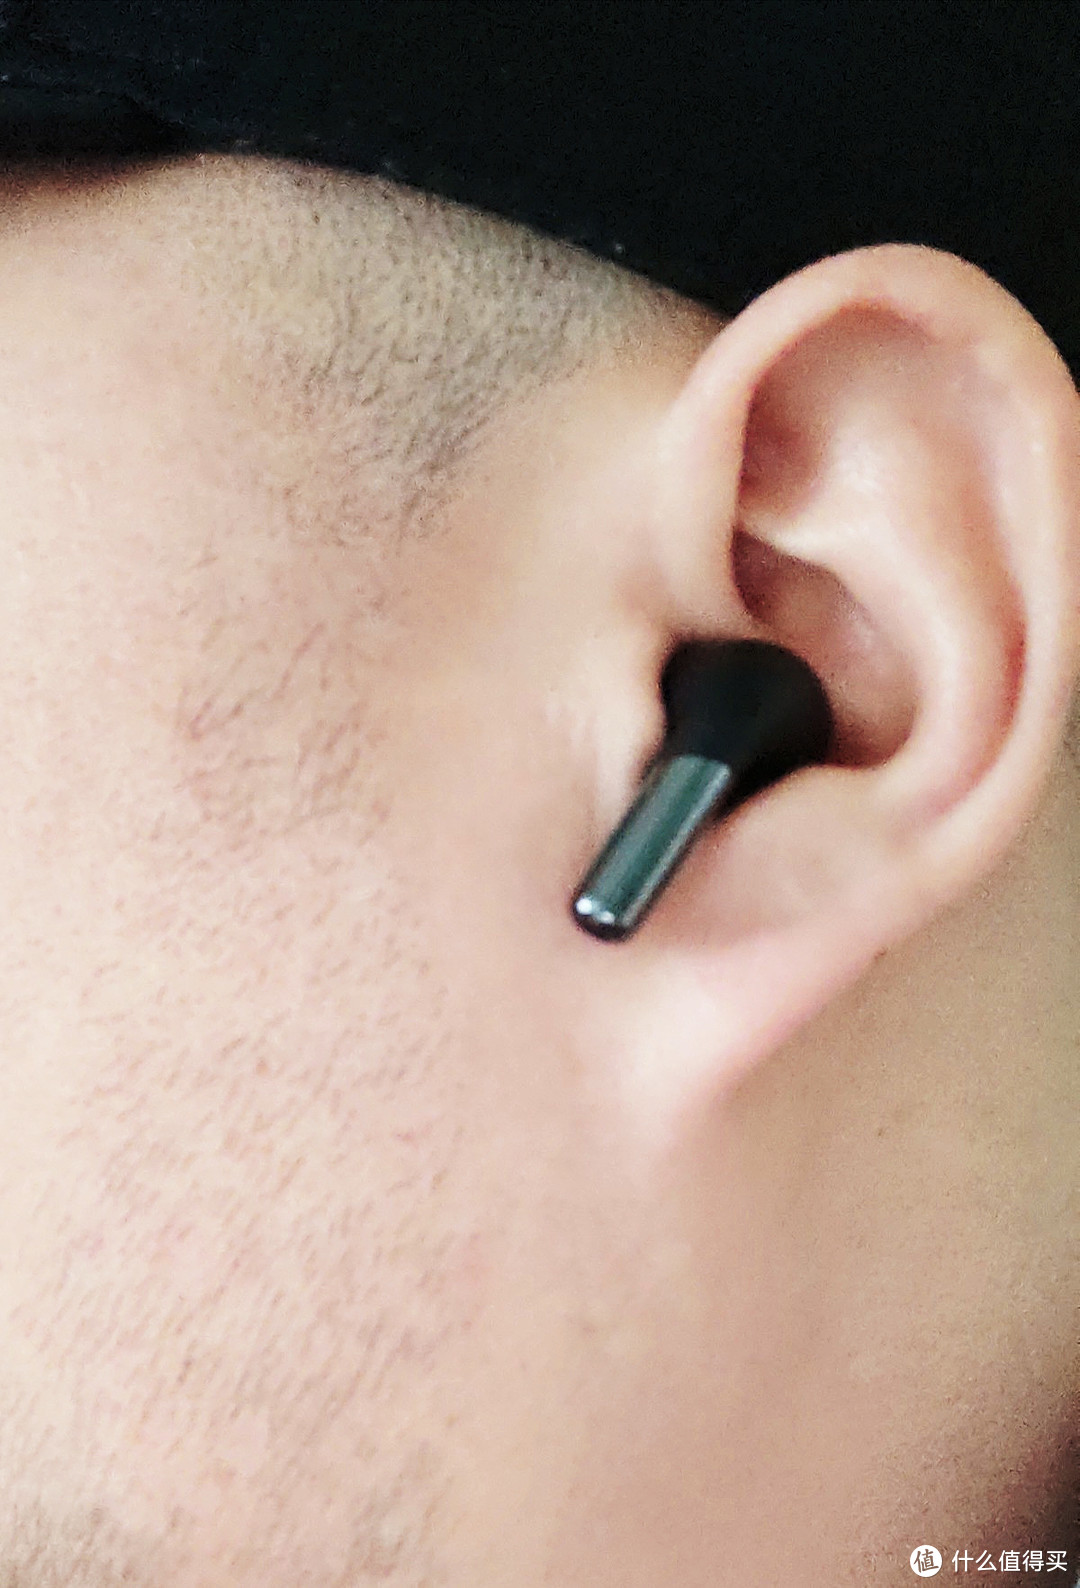 【一加Buds Pro 2评测】「真」TWS旗舰耳机 降噪新标杆